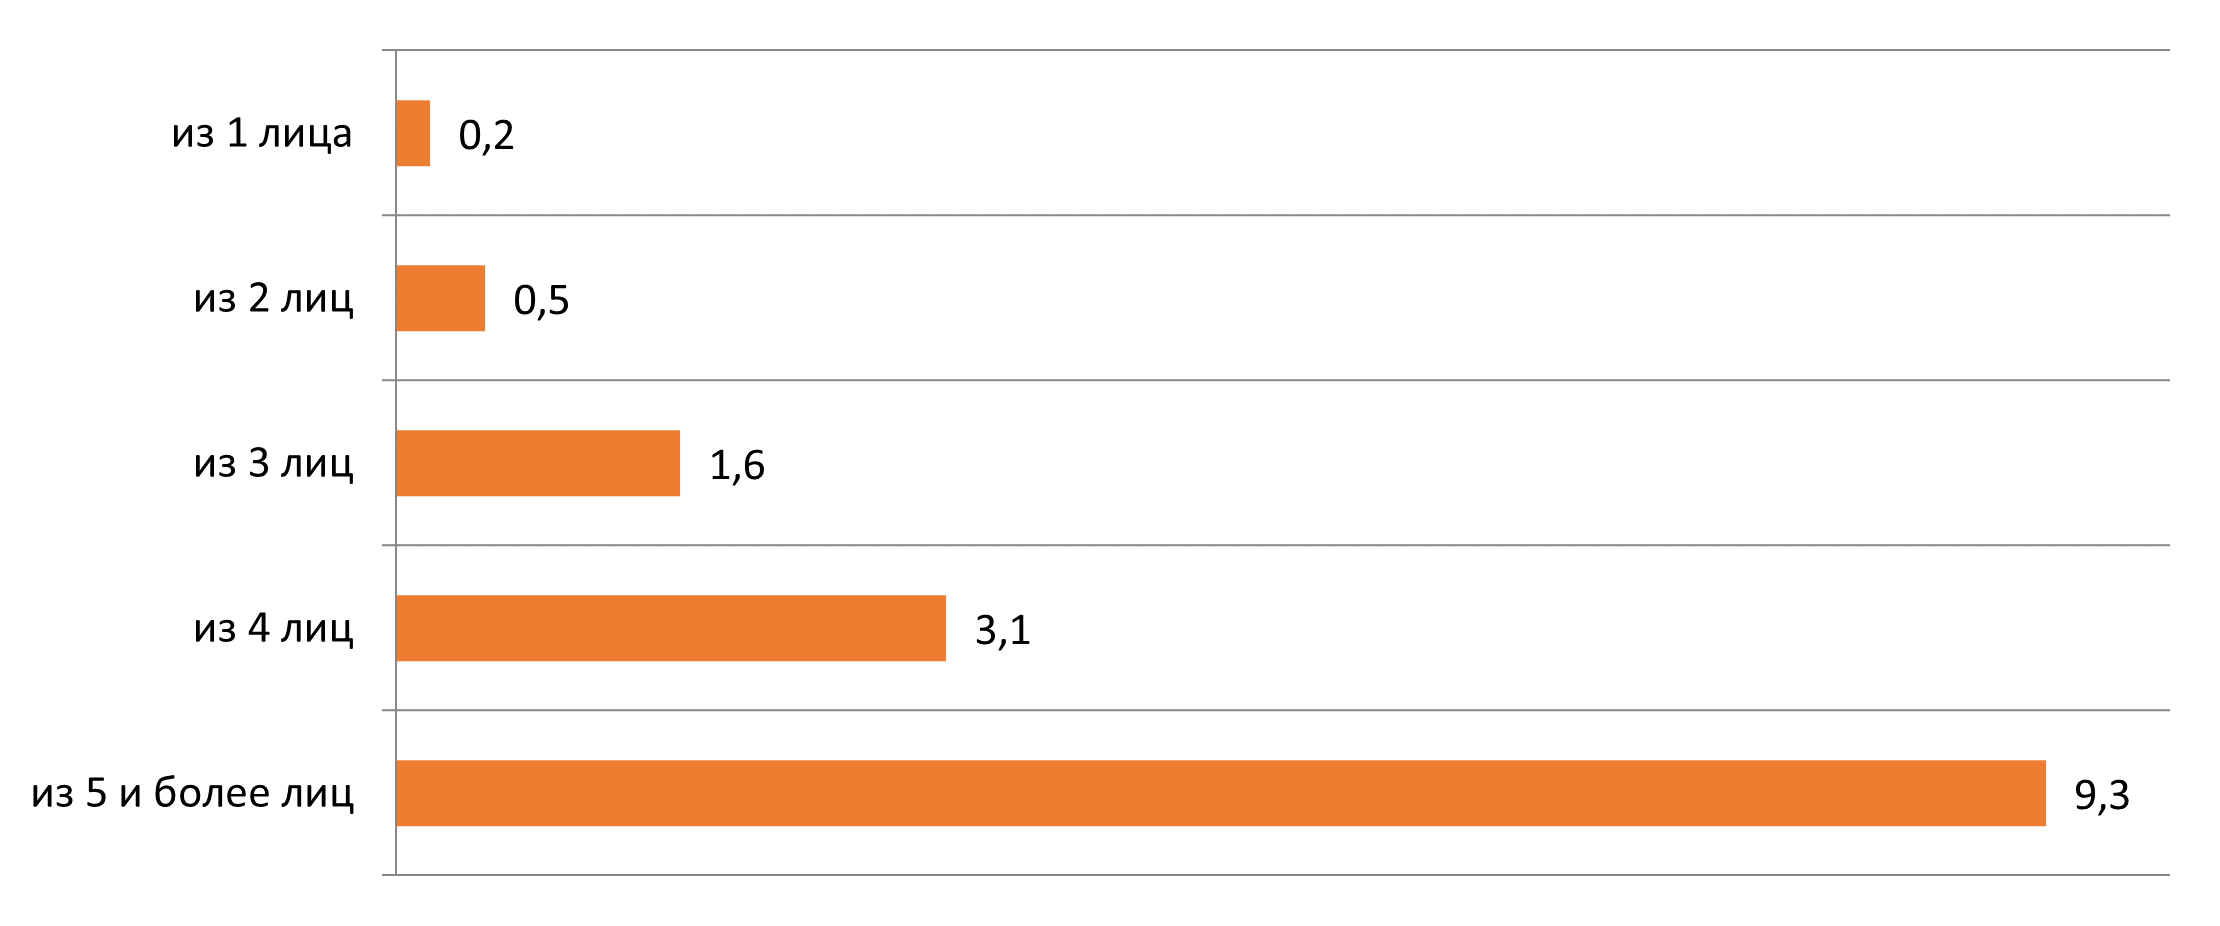 Основные показатели дифференциации доходов населения Республики Казахстан